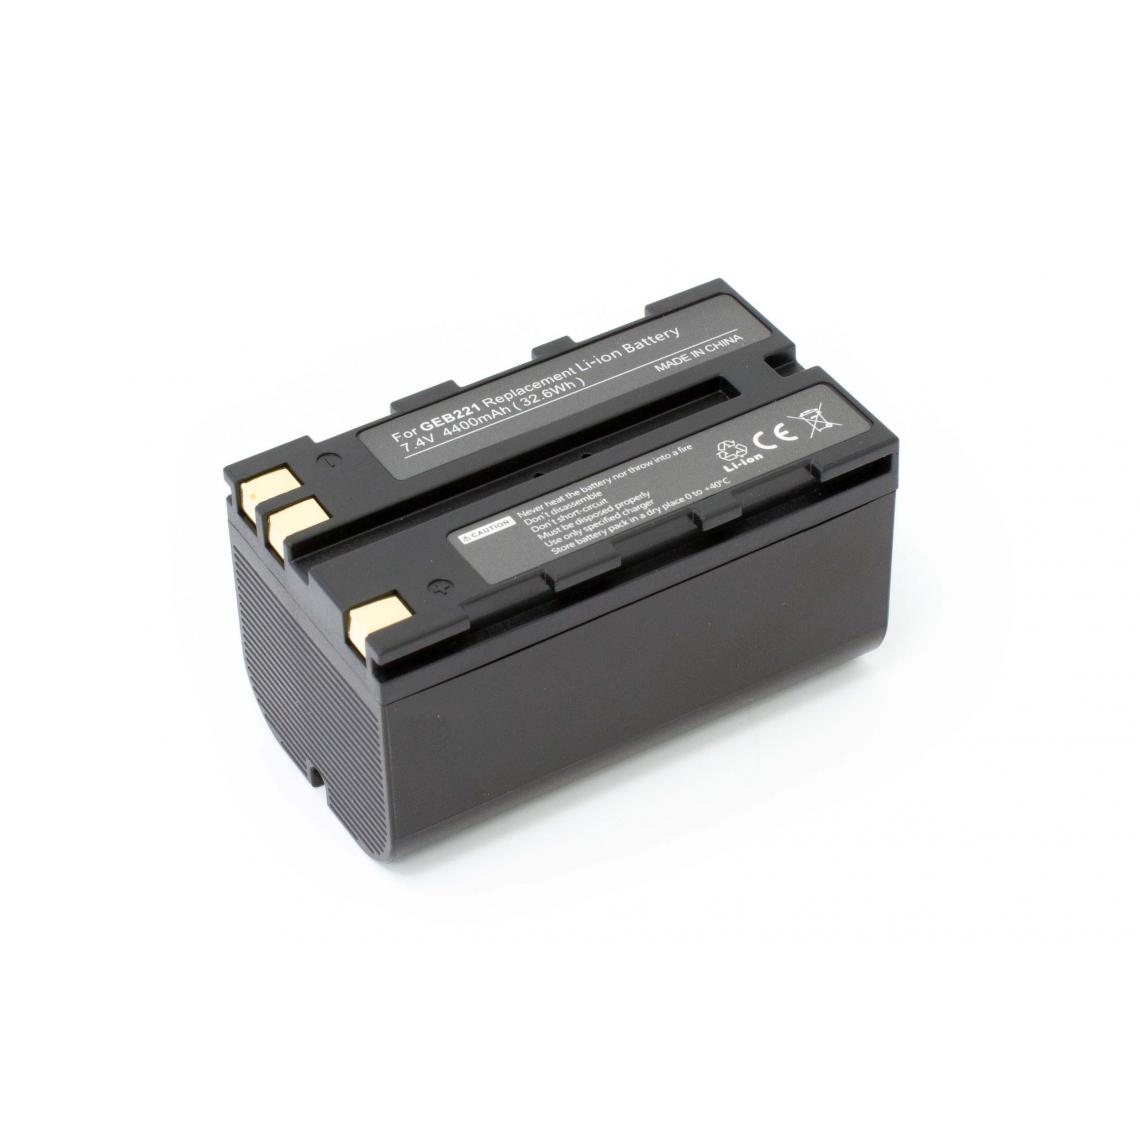 Vhbw - vhbw batterie remplace Geomax ZBA200 pour appareil photo DSLR (4400mAh, 7,4V, Li-Ion) - Piles rechargeables